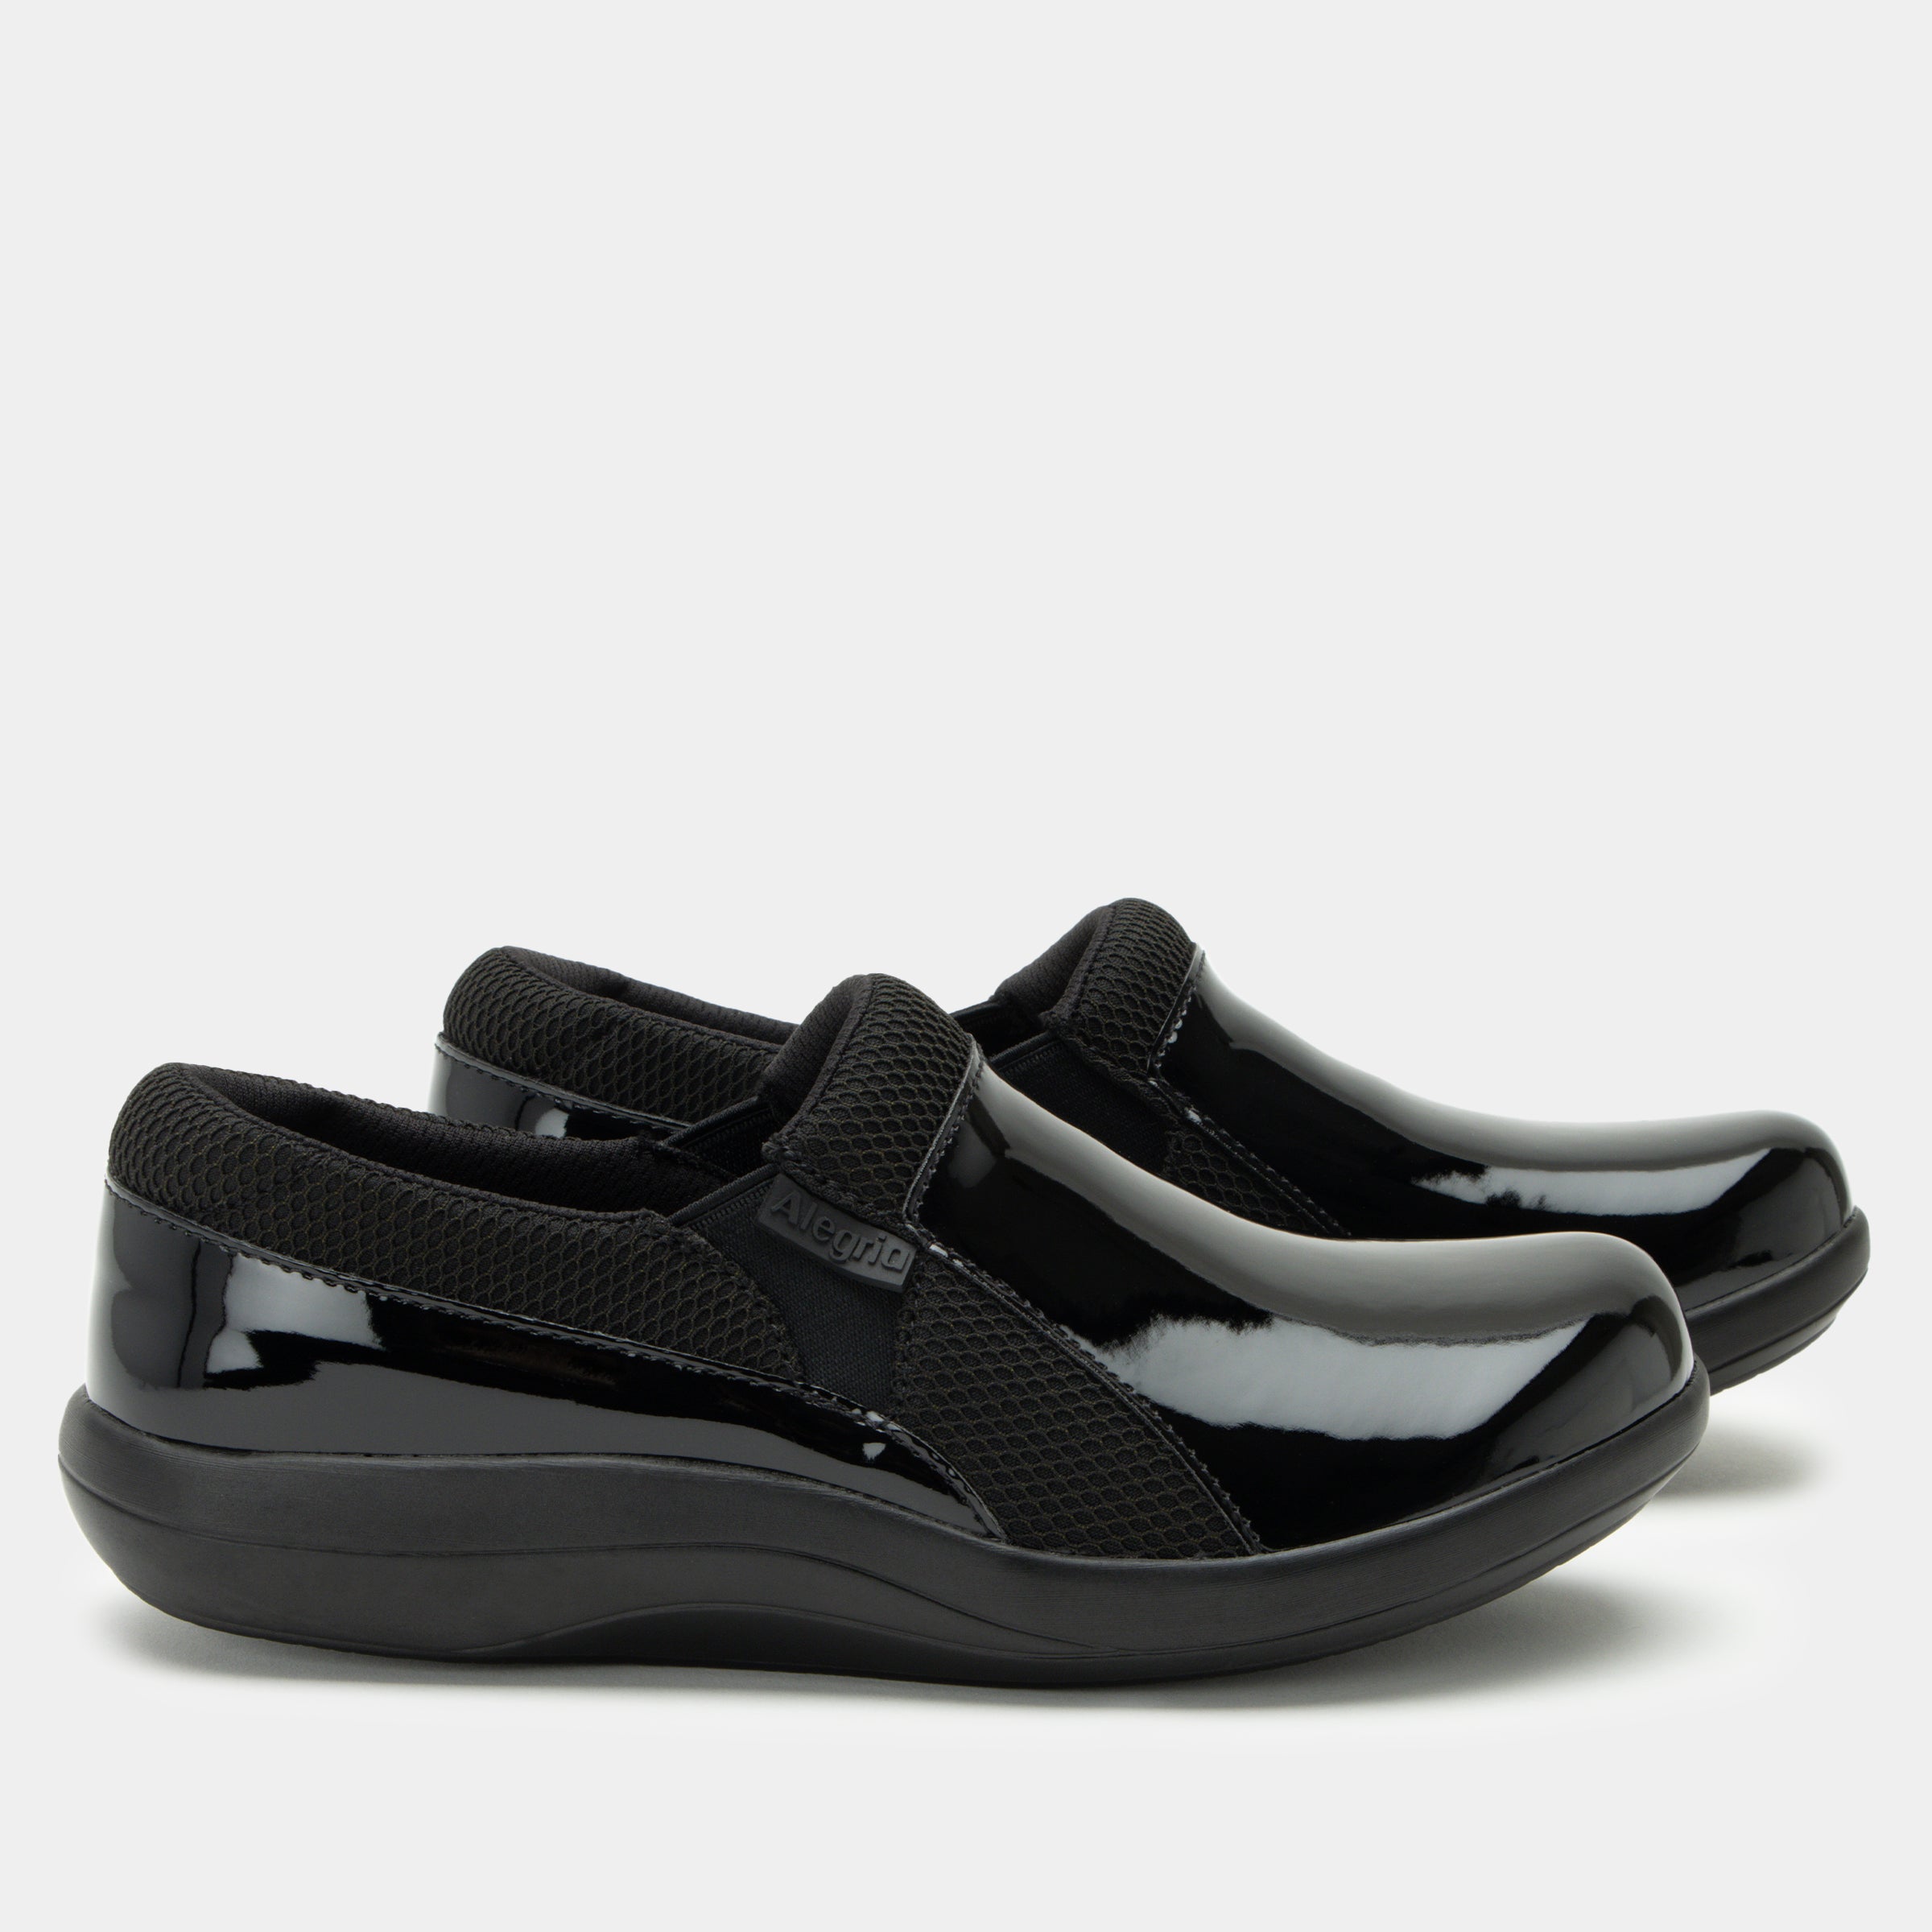 Duette Black Patent Shoe - Alegria Shoes